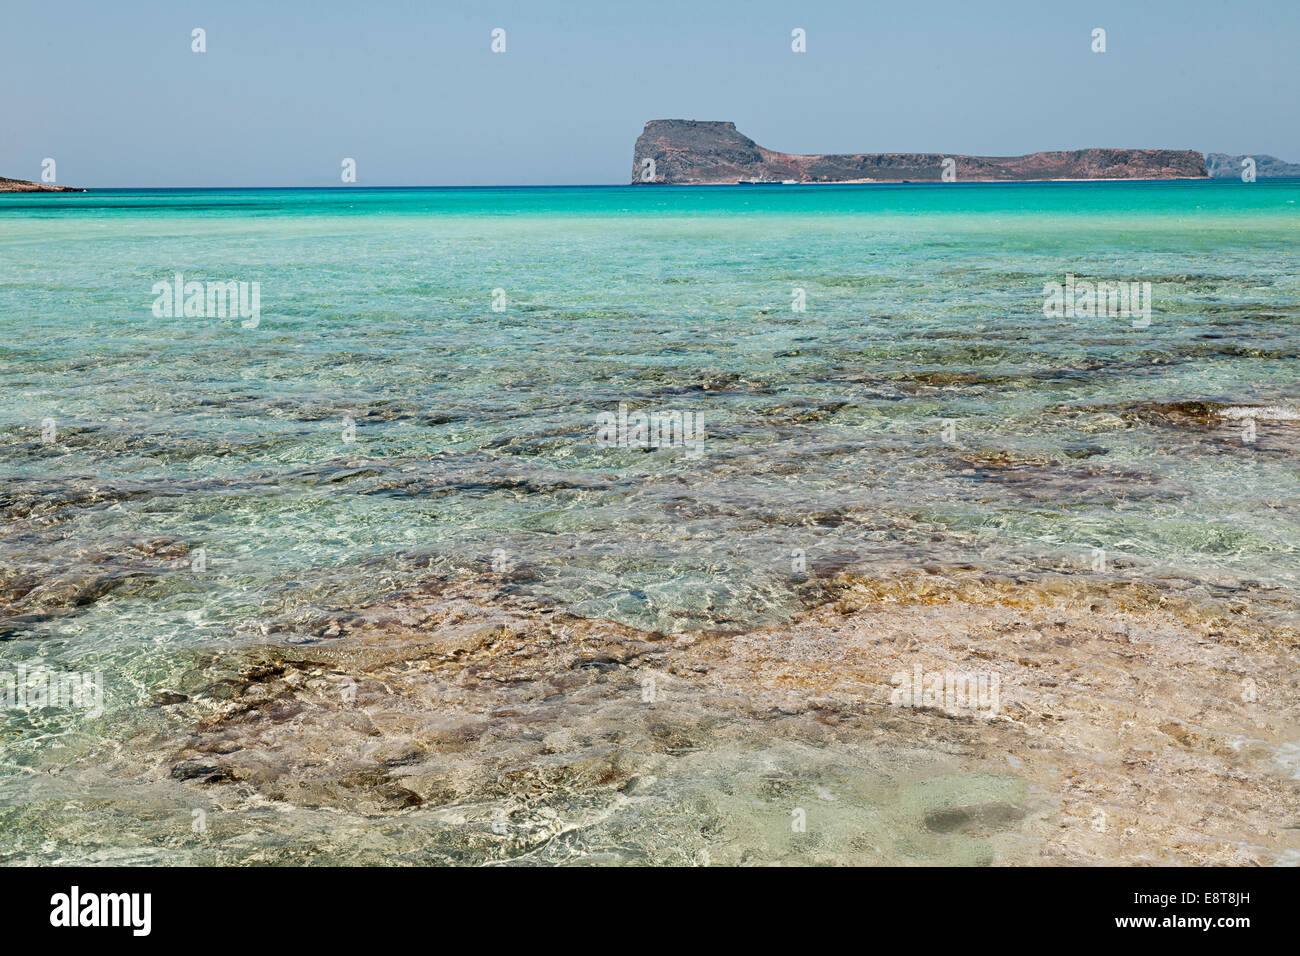 Bay of Balos, Crete, Greece Stock Photo